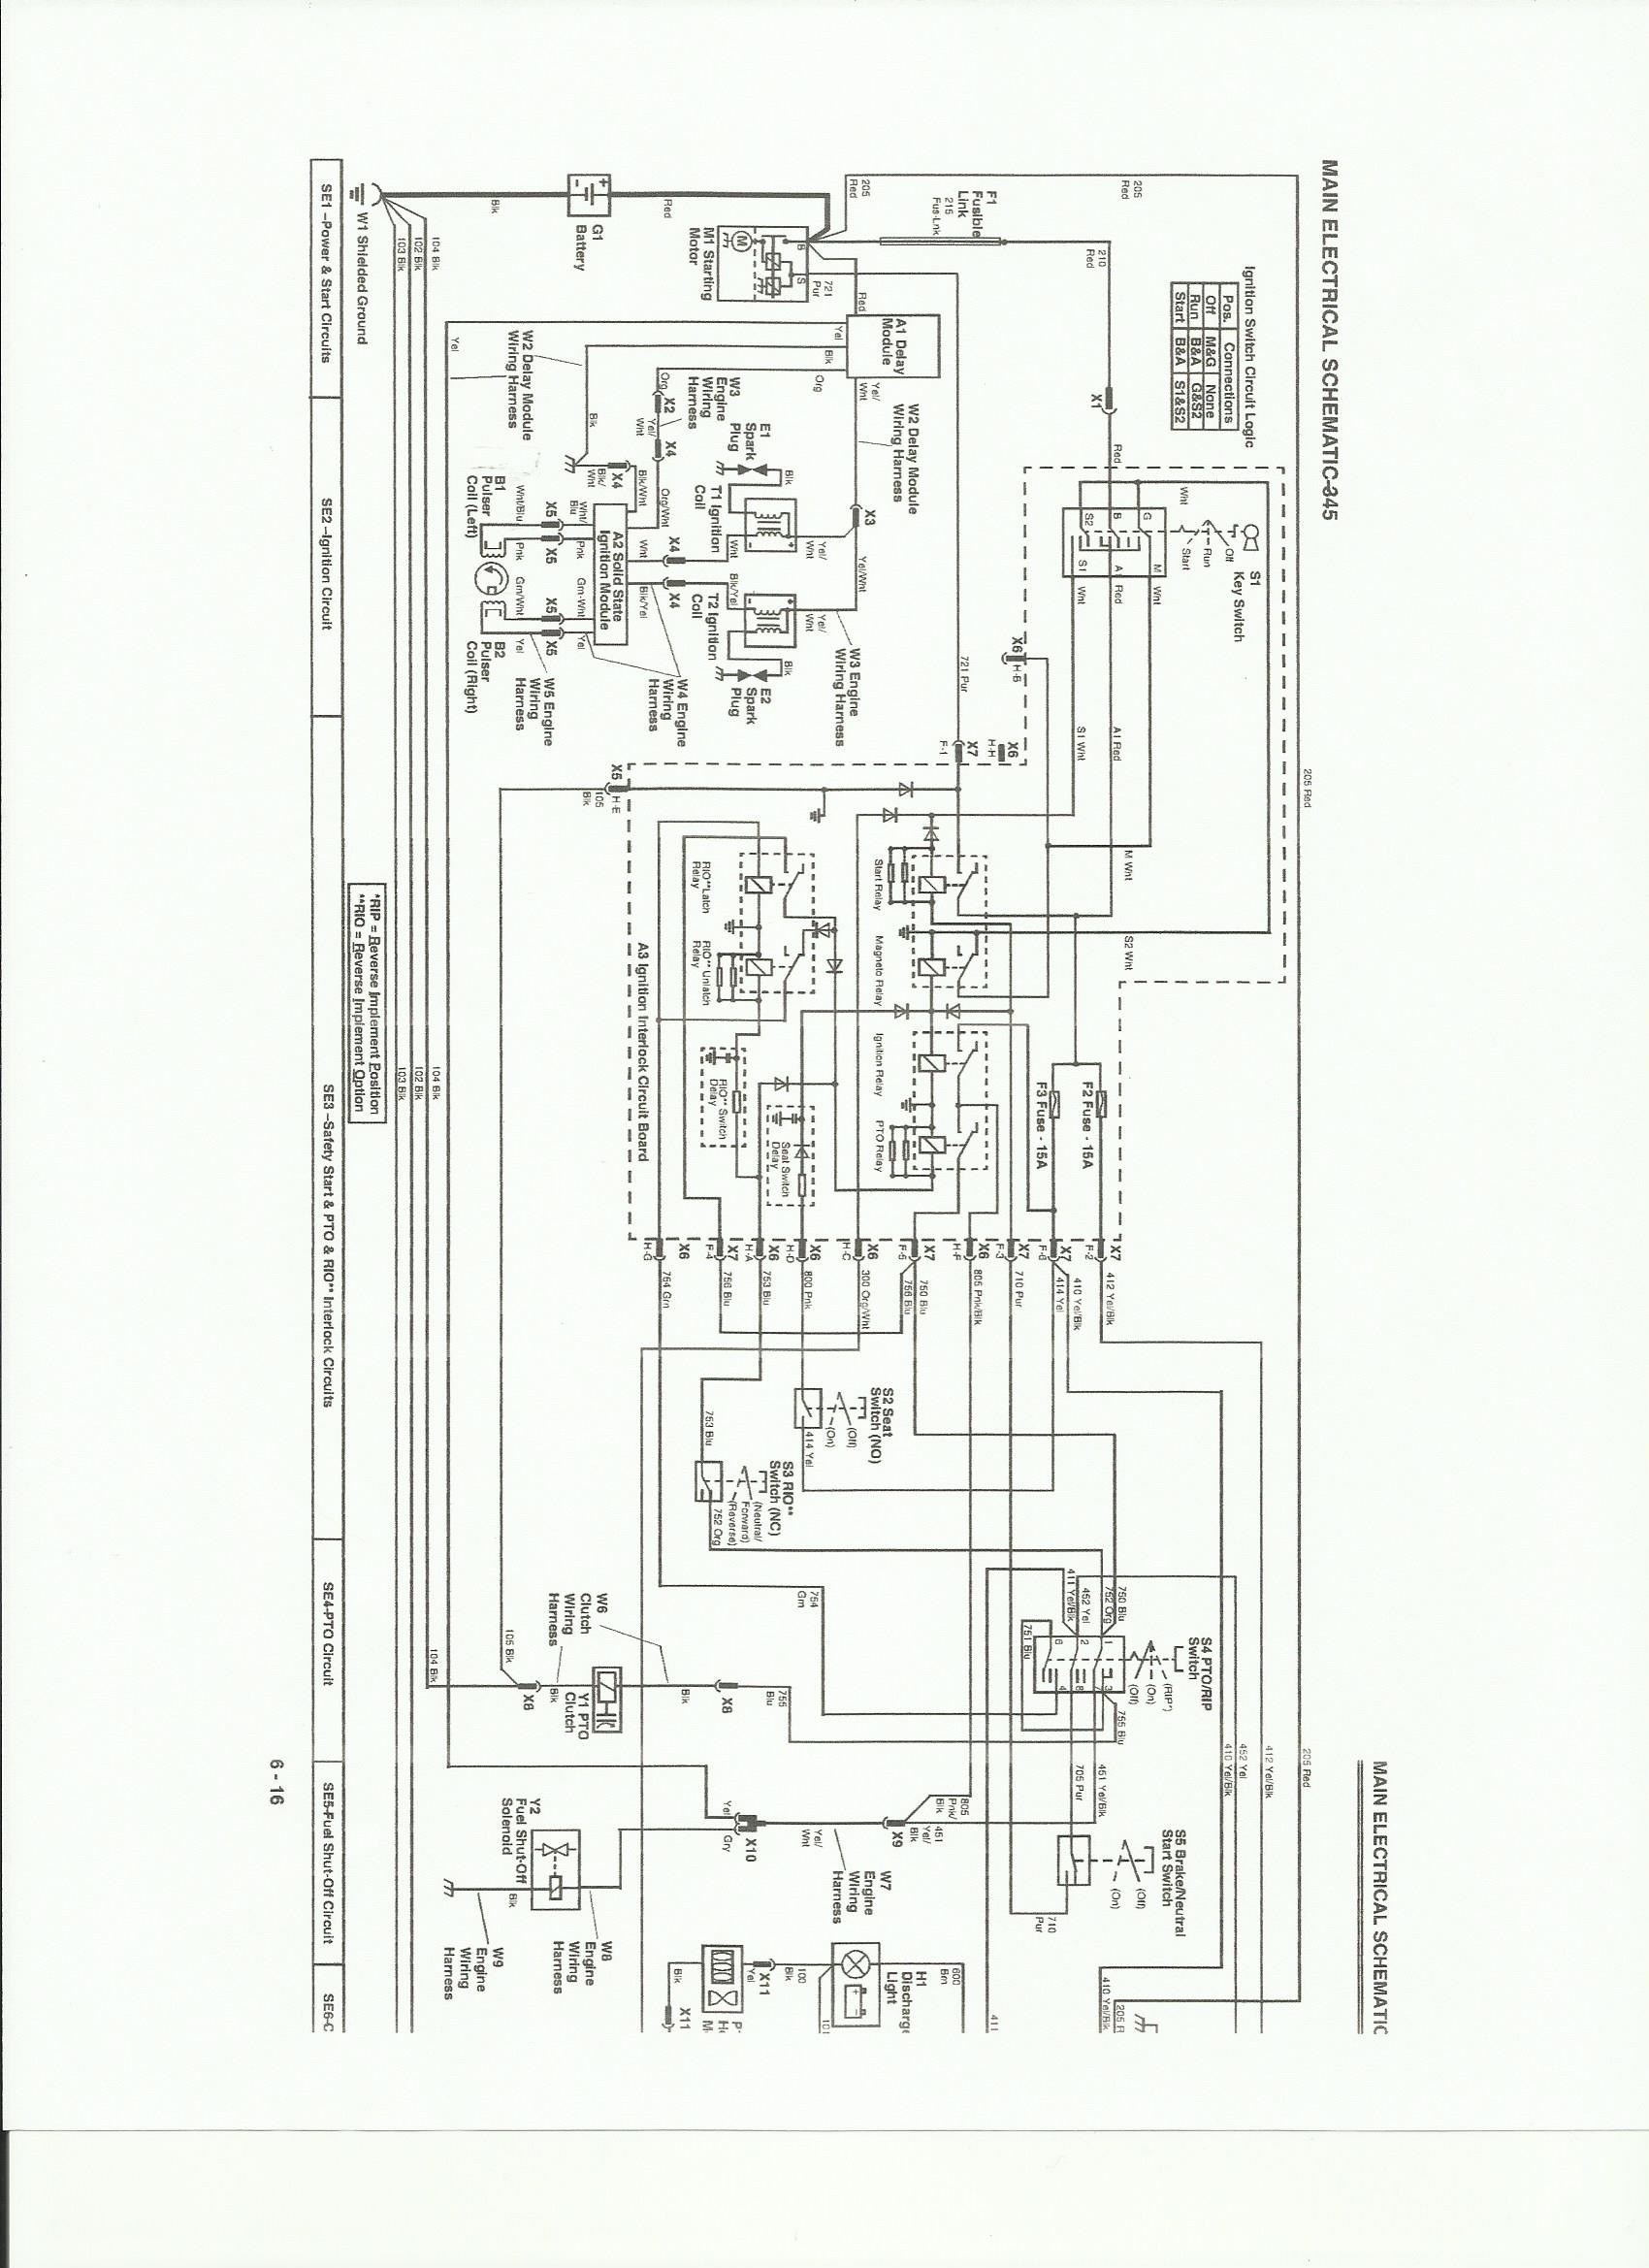 John Deere 345 Electrical Schematic 4726 John Deere 345 Engine Wiring Schematic Of John Deere 345 Electrical Schematic